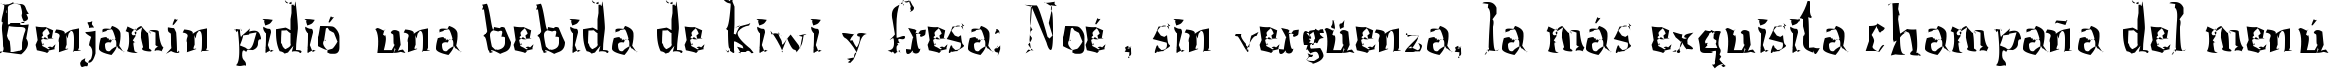 Пример написания шрифтом A Font with Serifs. Disordered текста на испанском